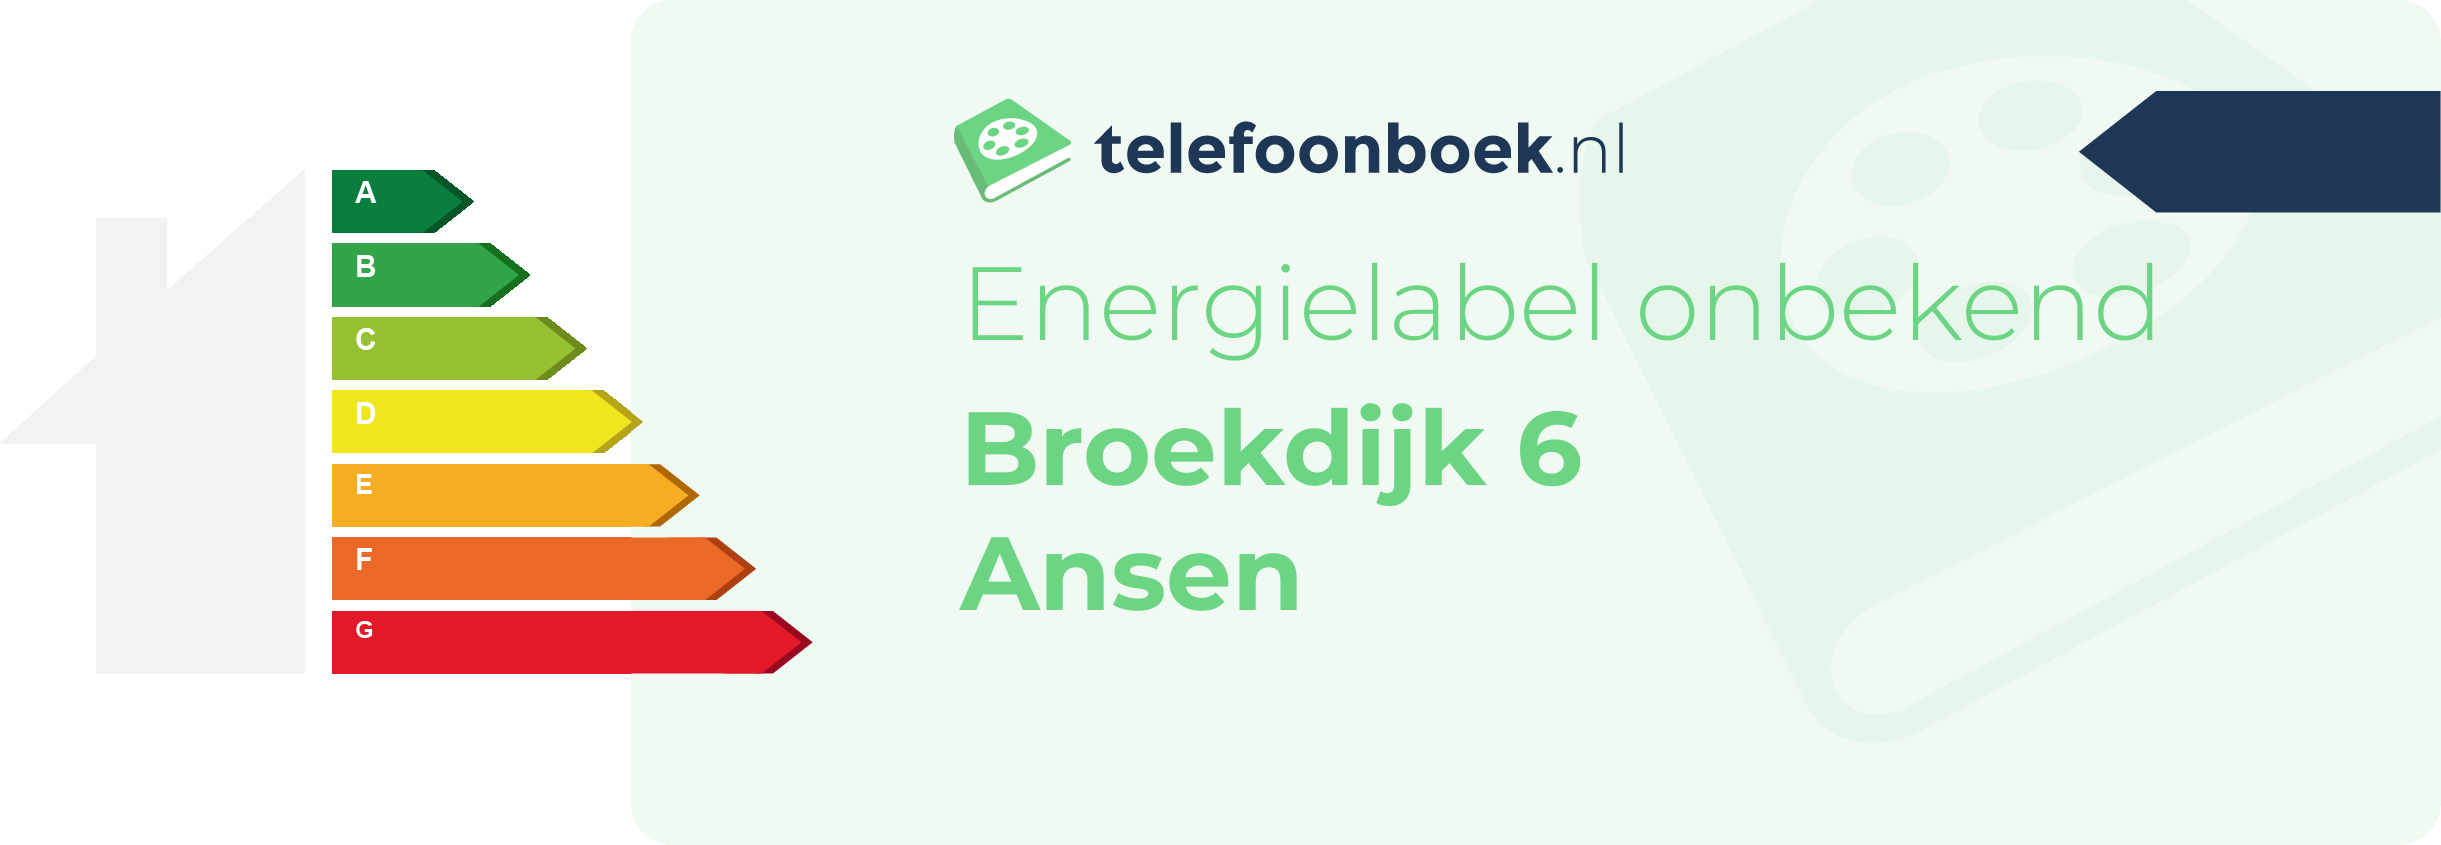 Energielabel Broekdijk 6 Ansen